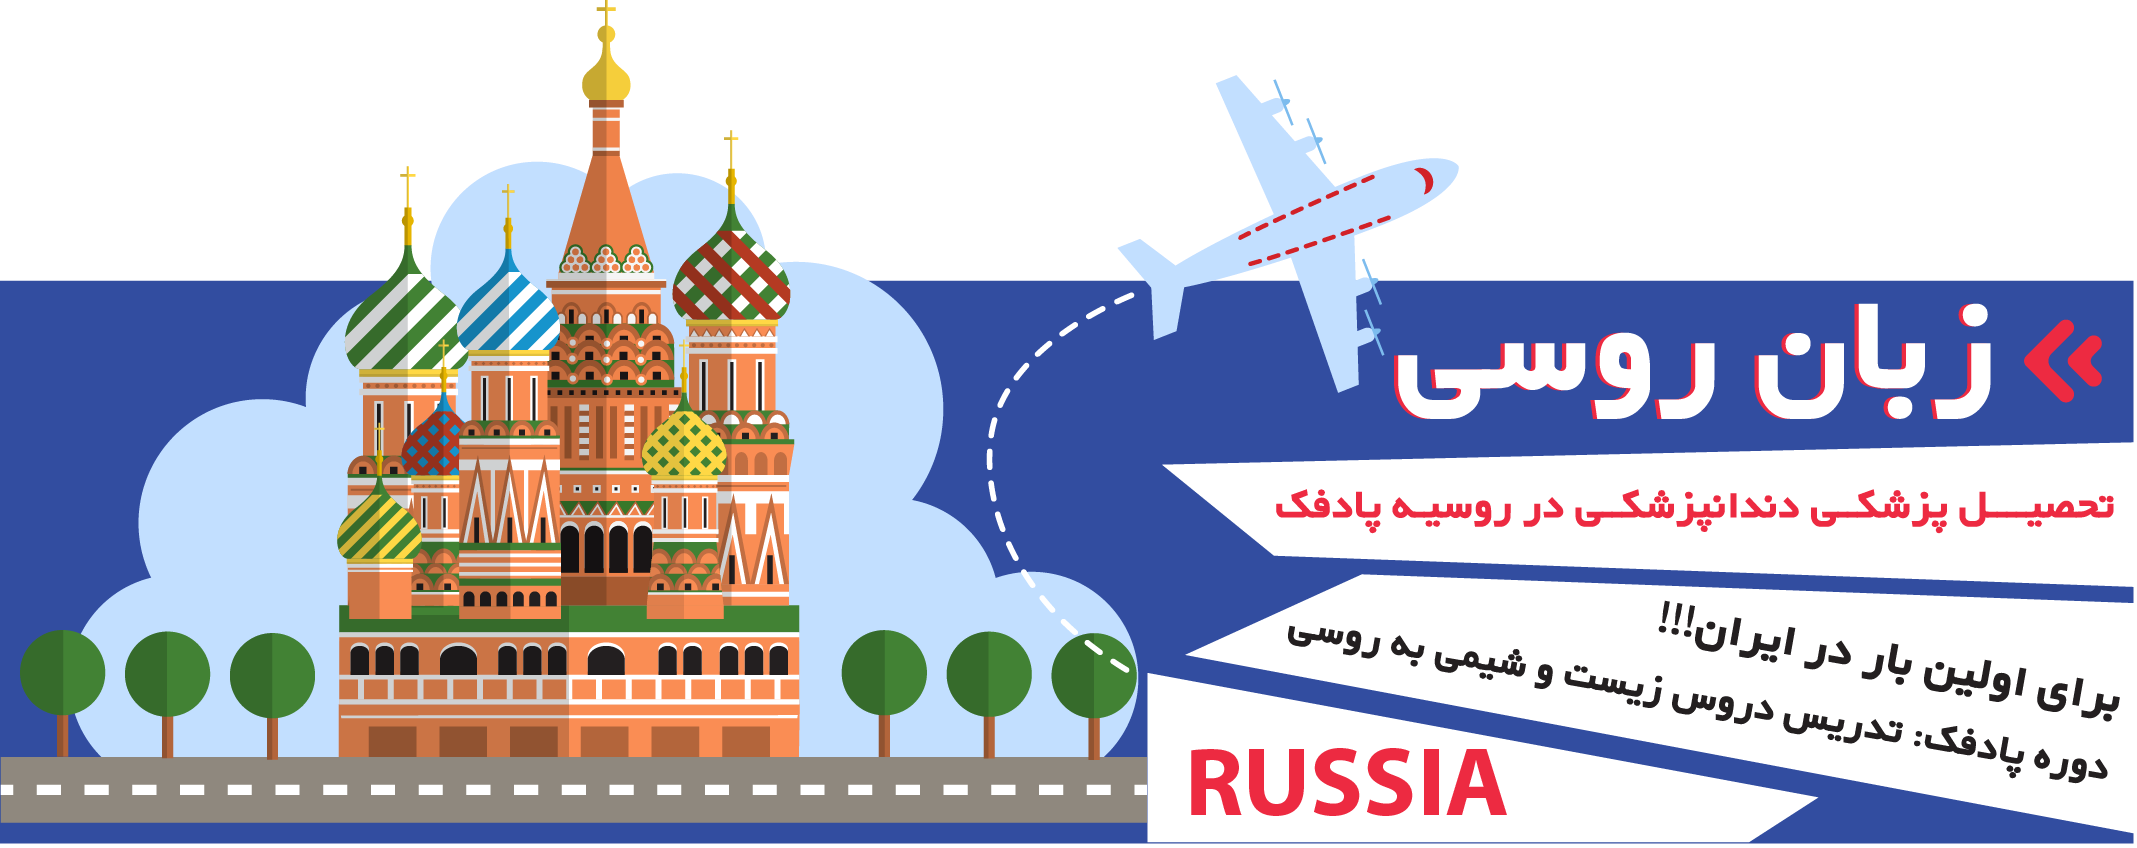 بهترین کلاس زبان روسی در بوشهر _ آموزش روسی بوشهر